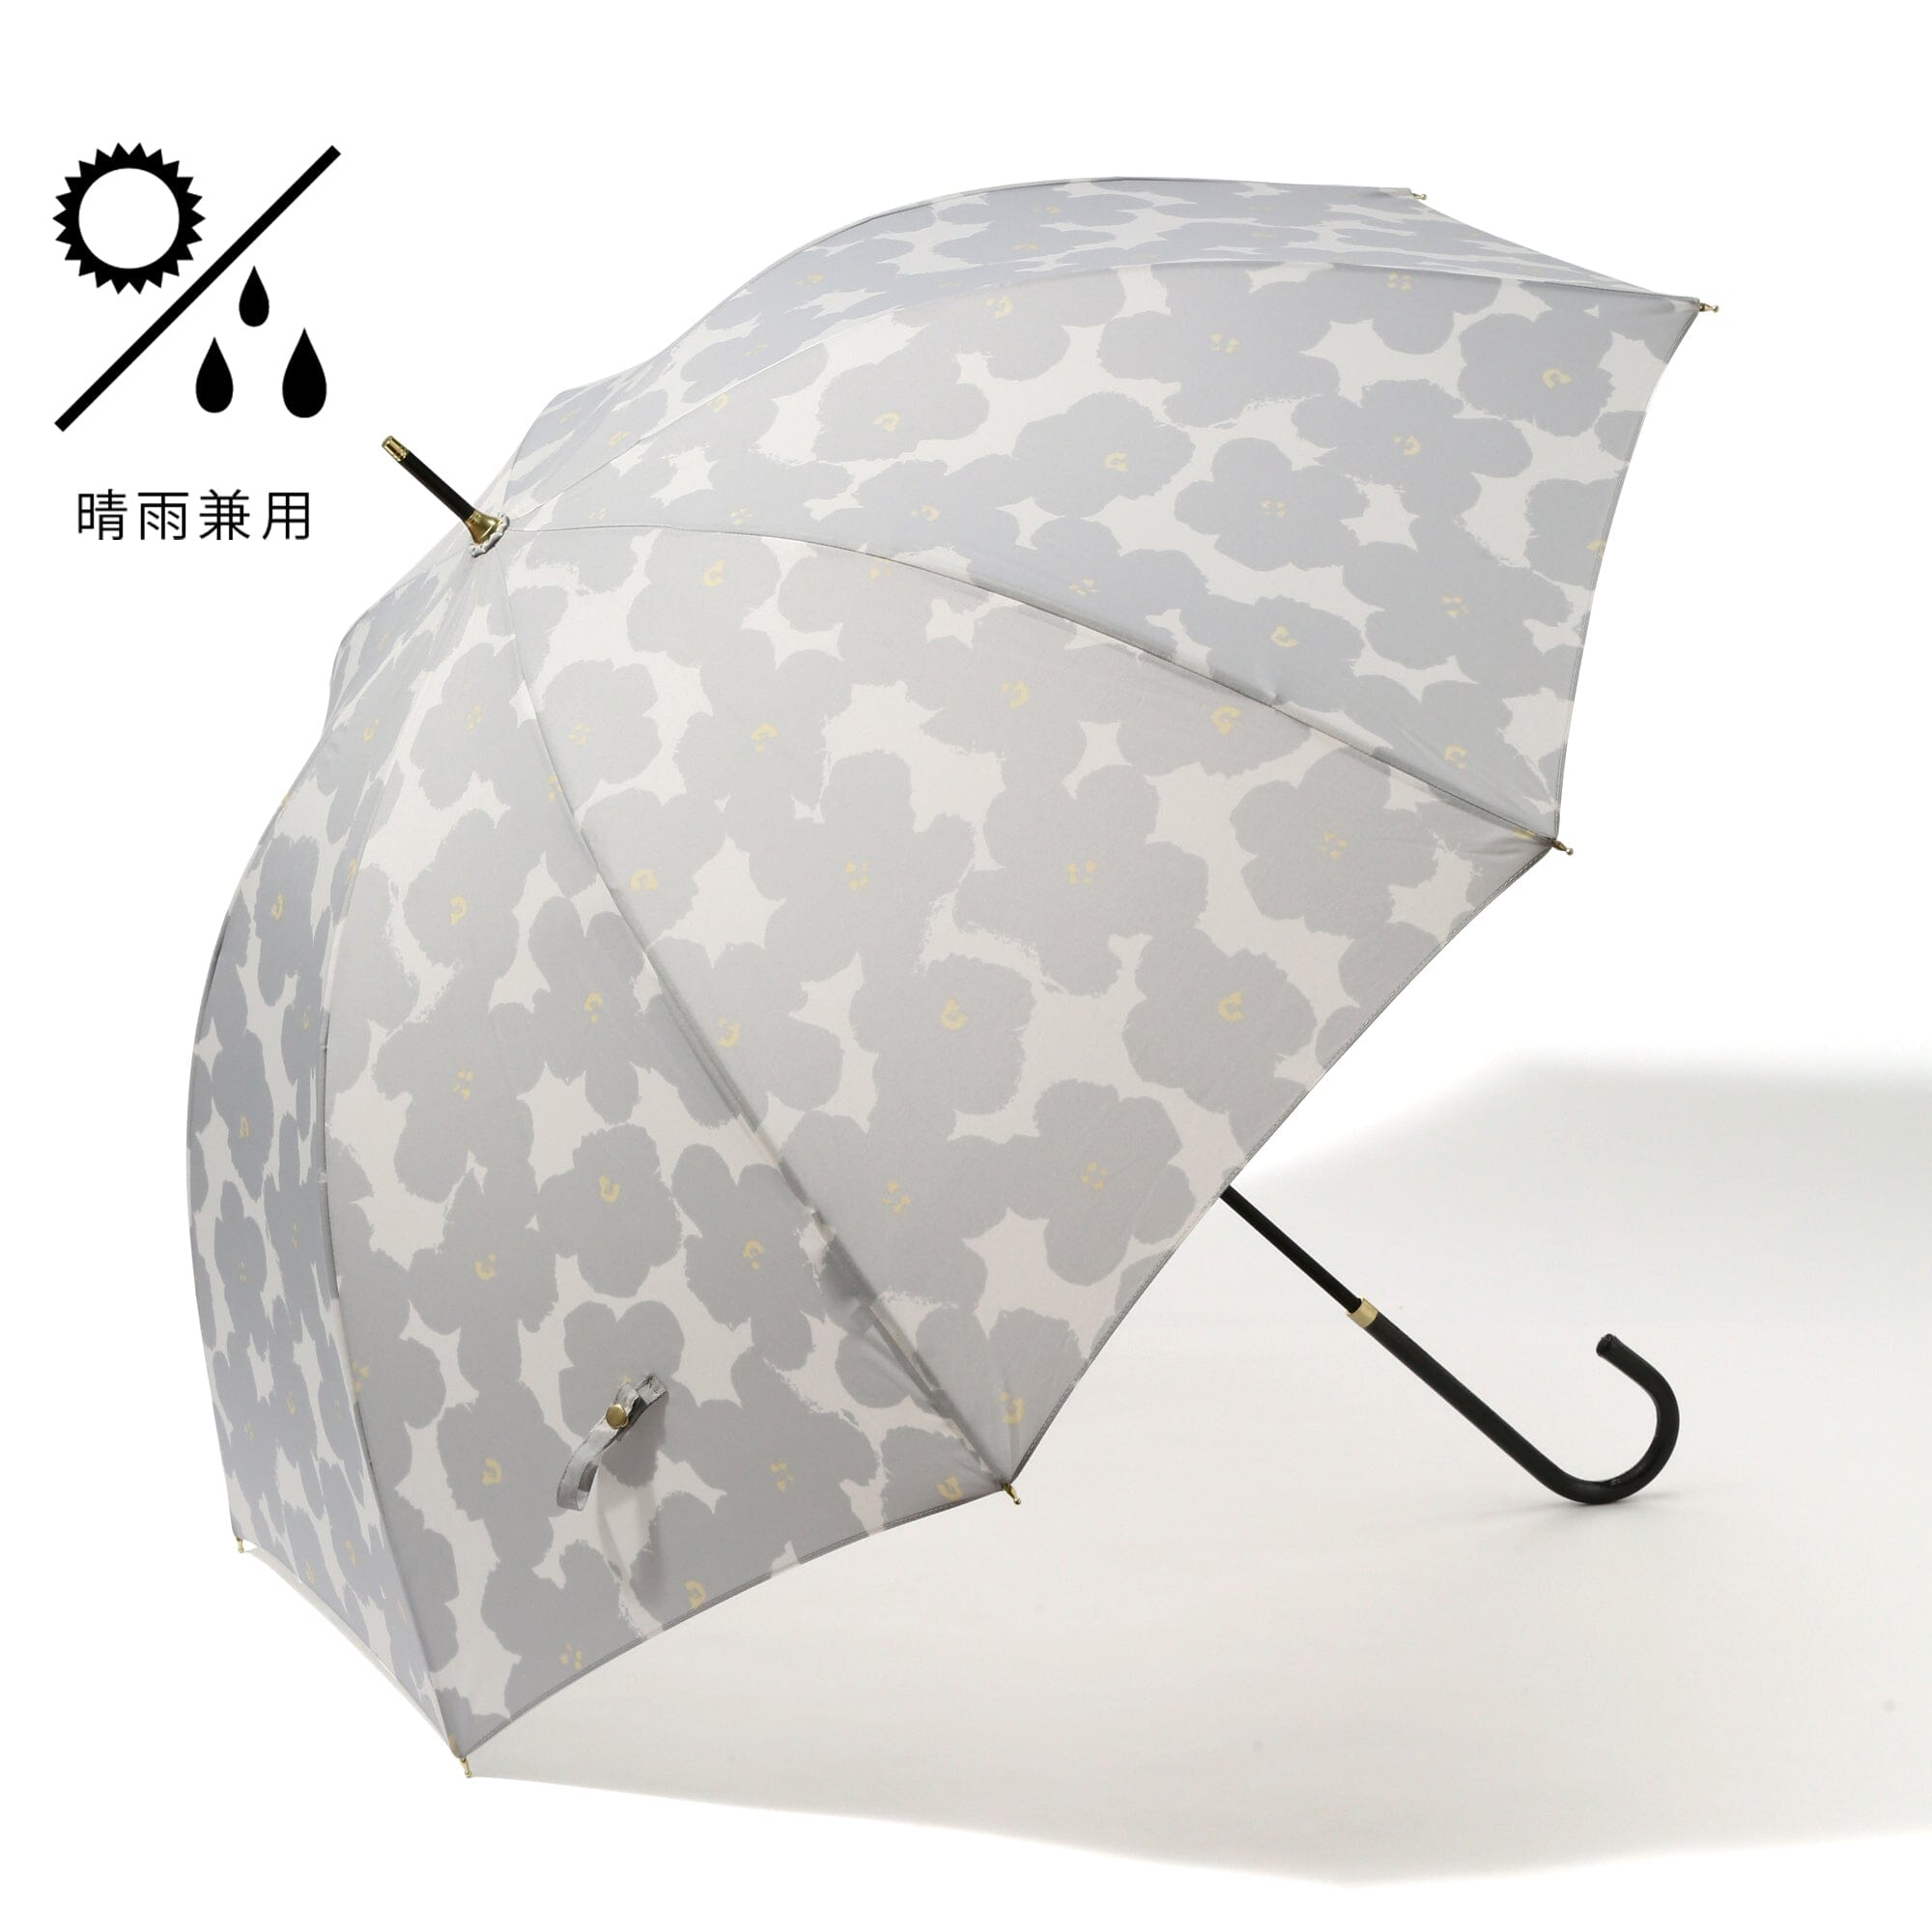 Hana Print Umbrella 58Cm  Gray